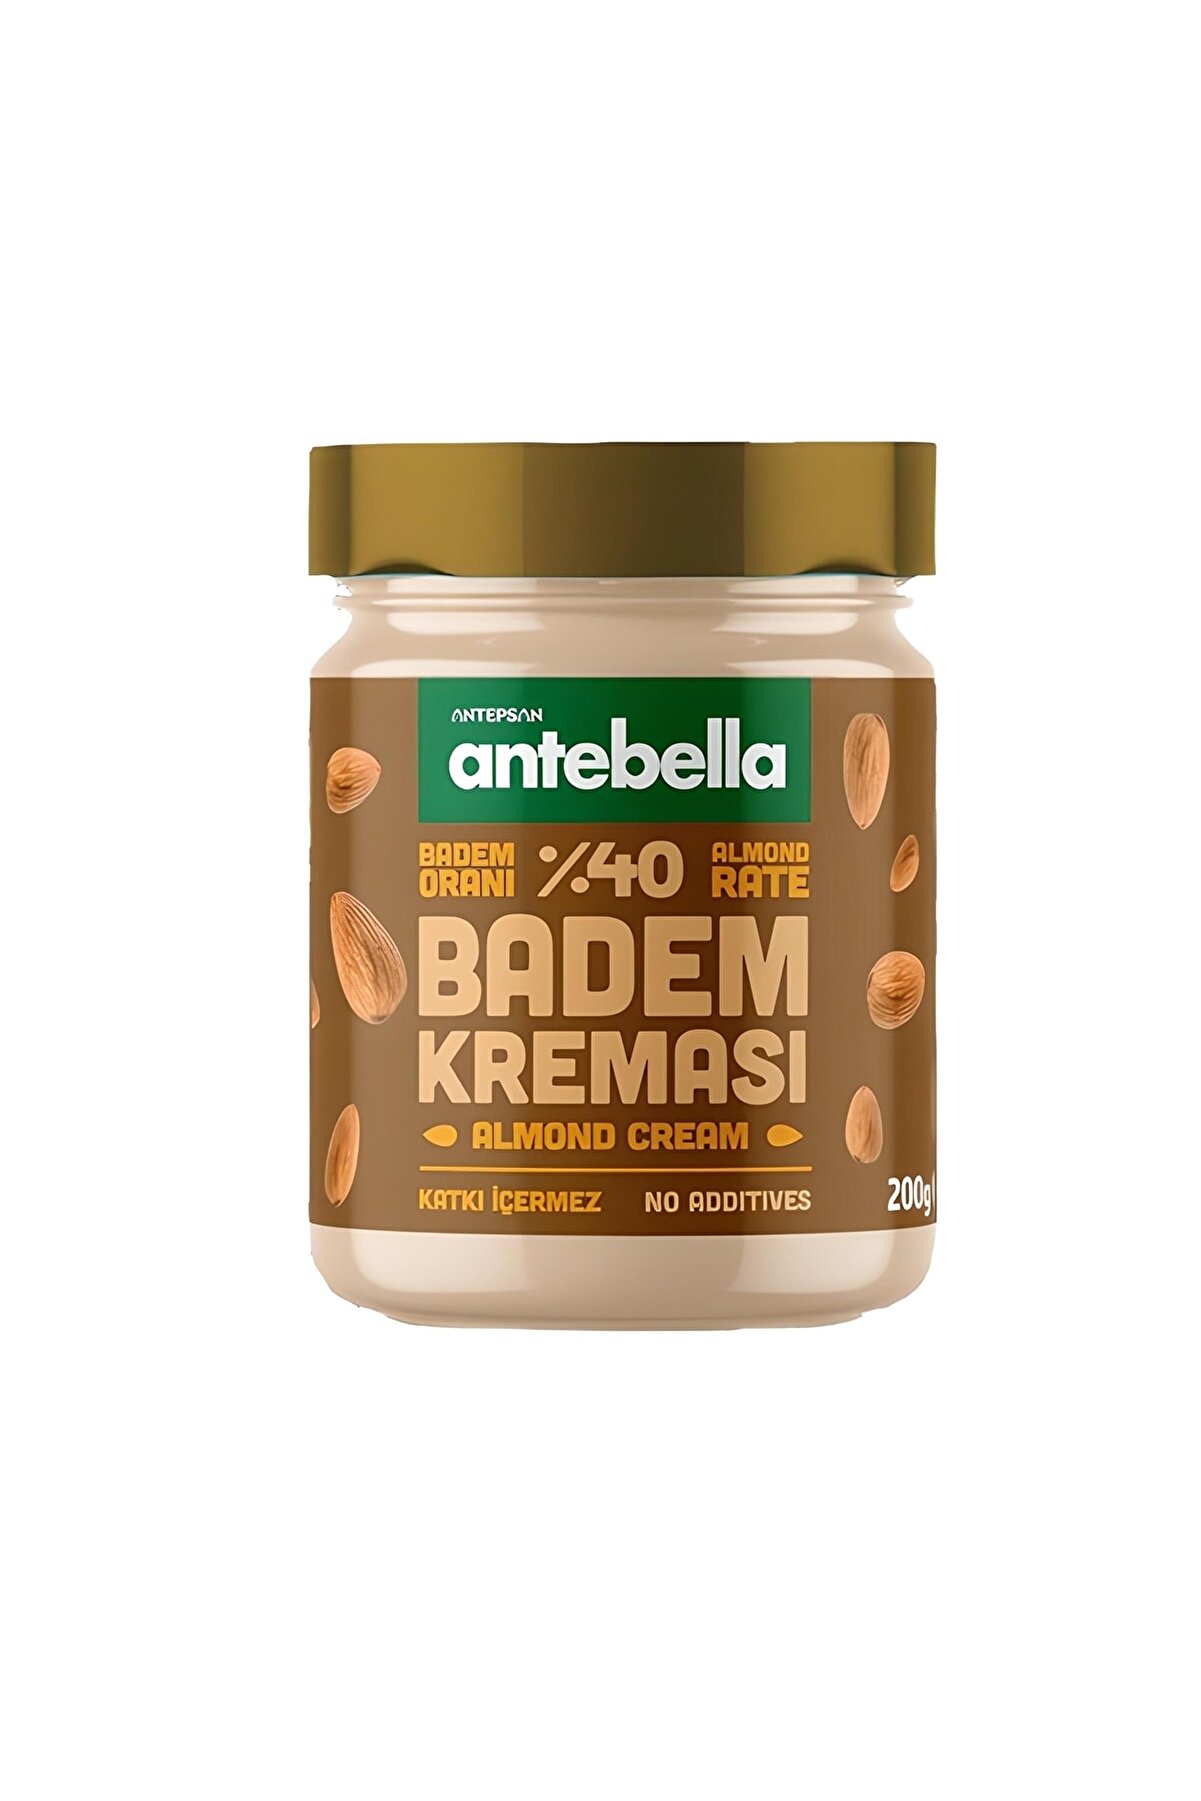 Antebella Almond Cream 200 g, (%40) Almond